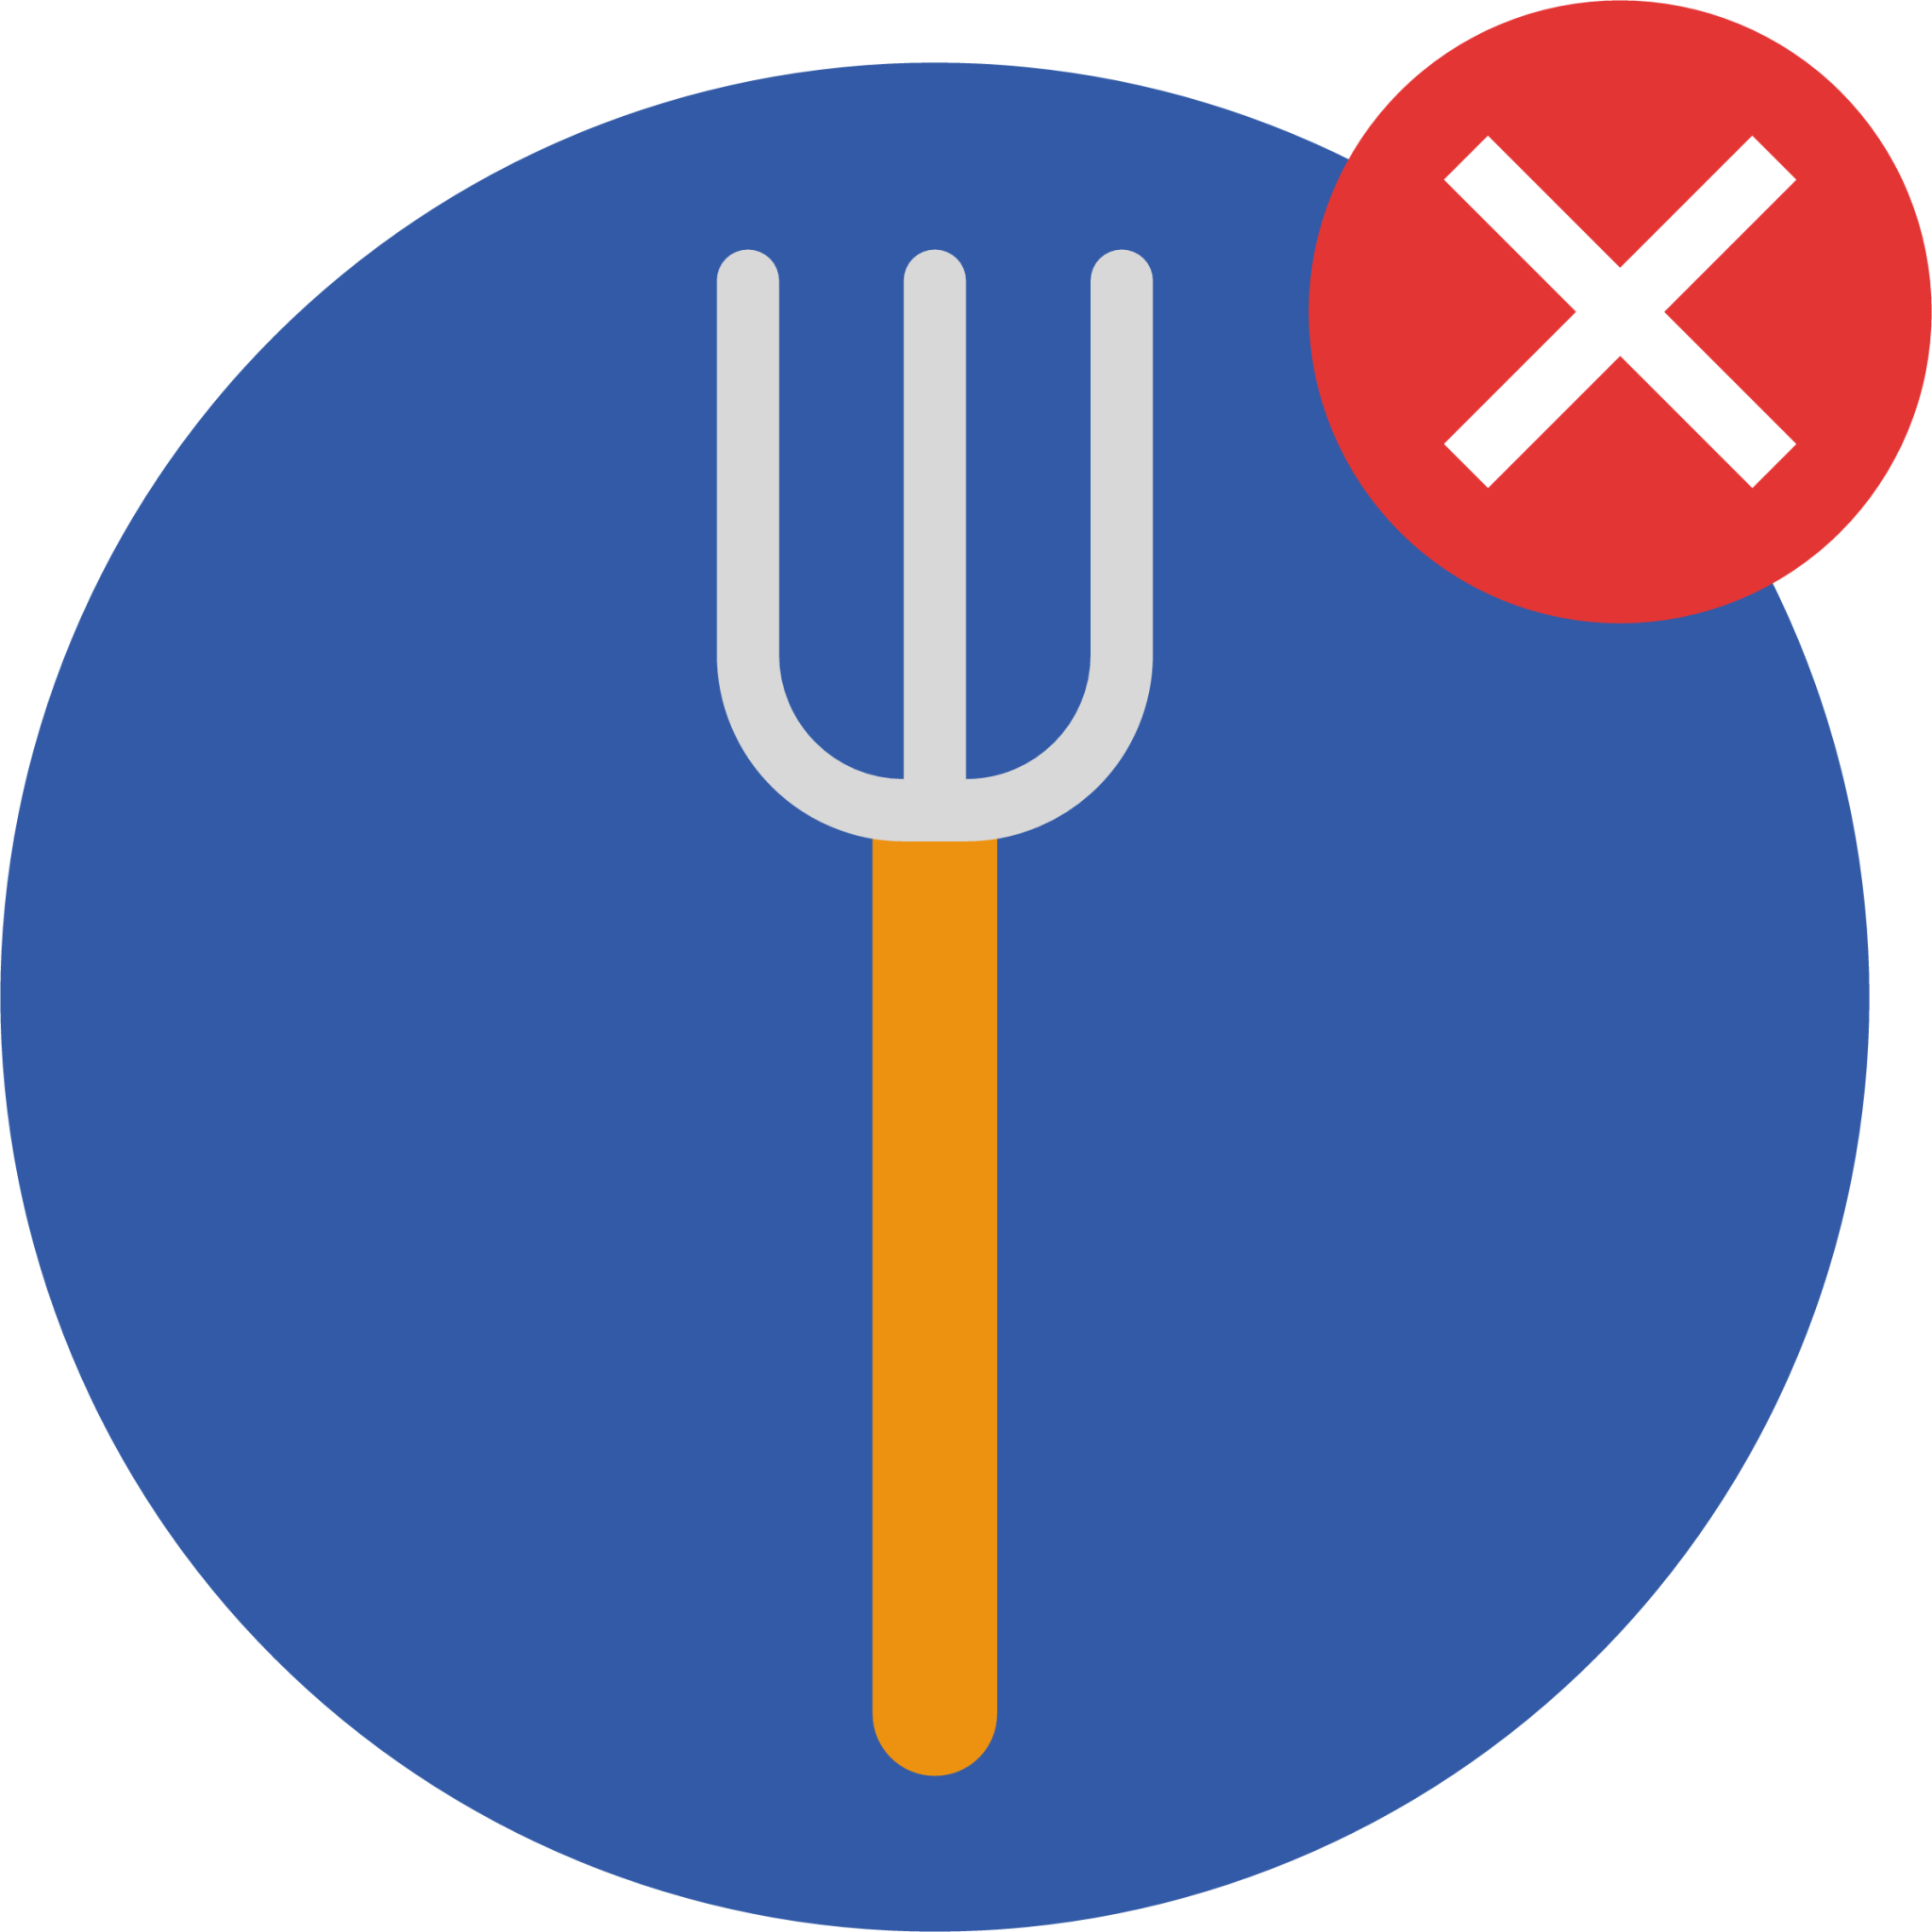 fork cancel delete plate icon